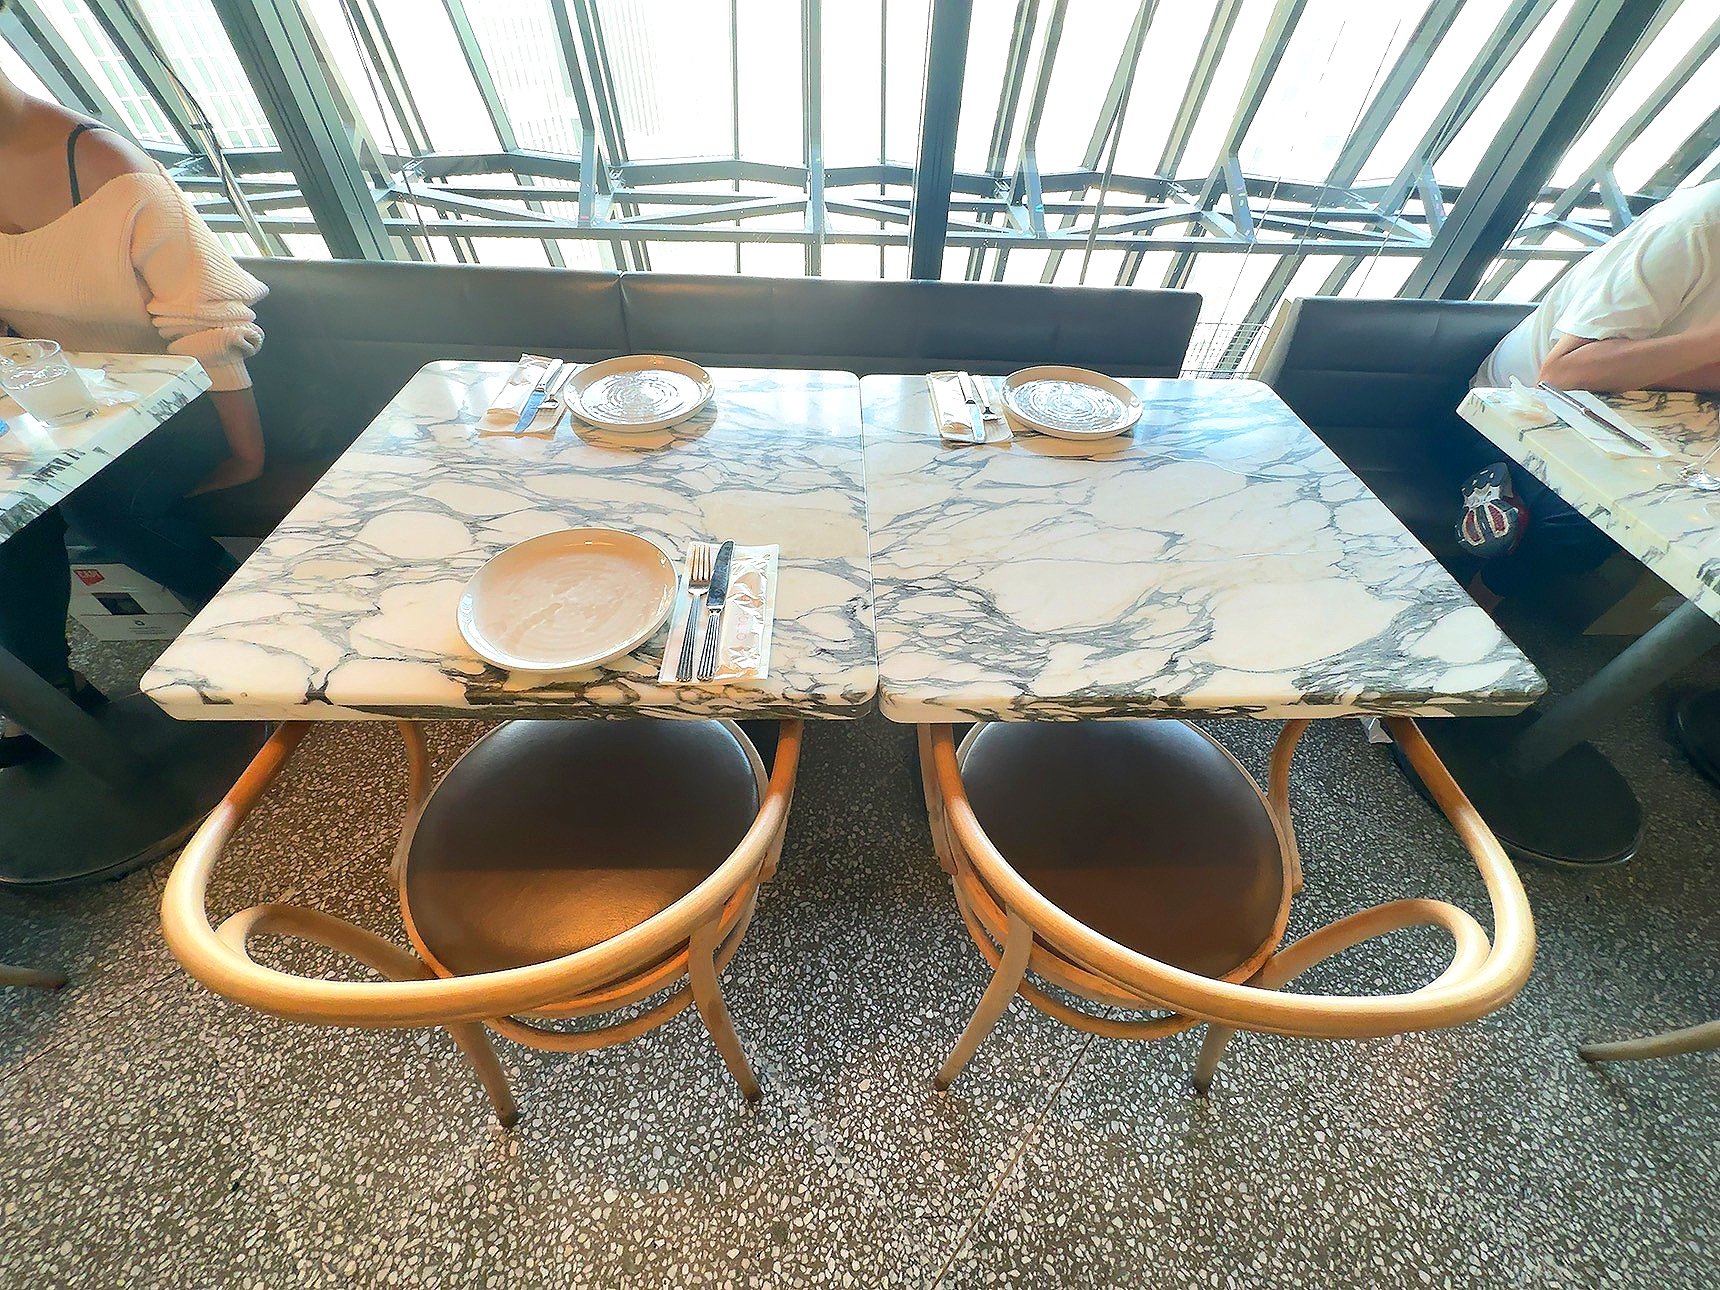 『THE APOLLO』テーブルの雰囲気